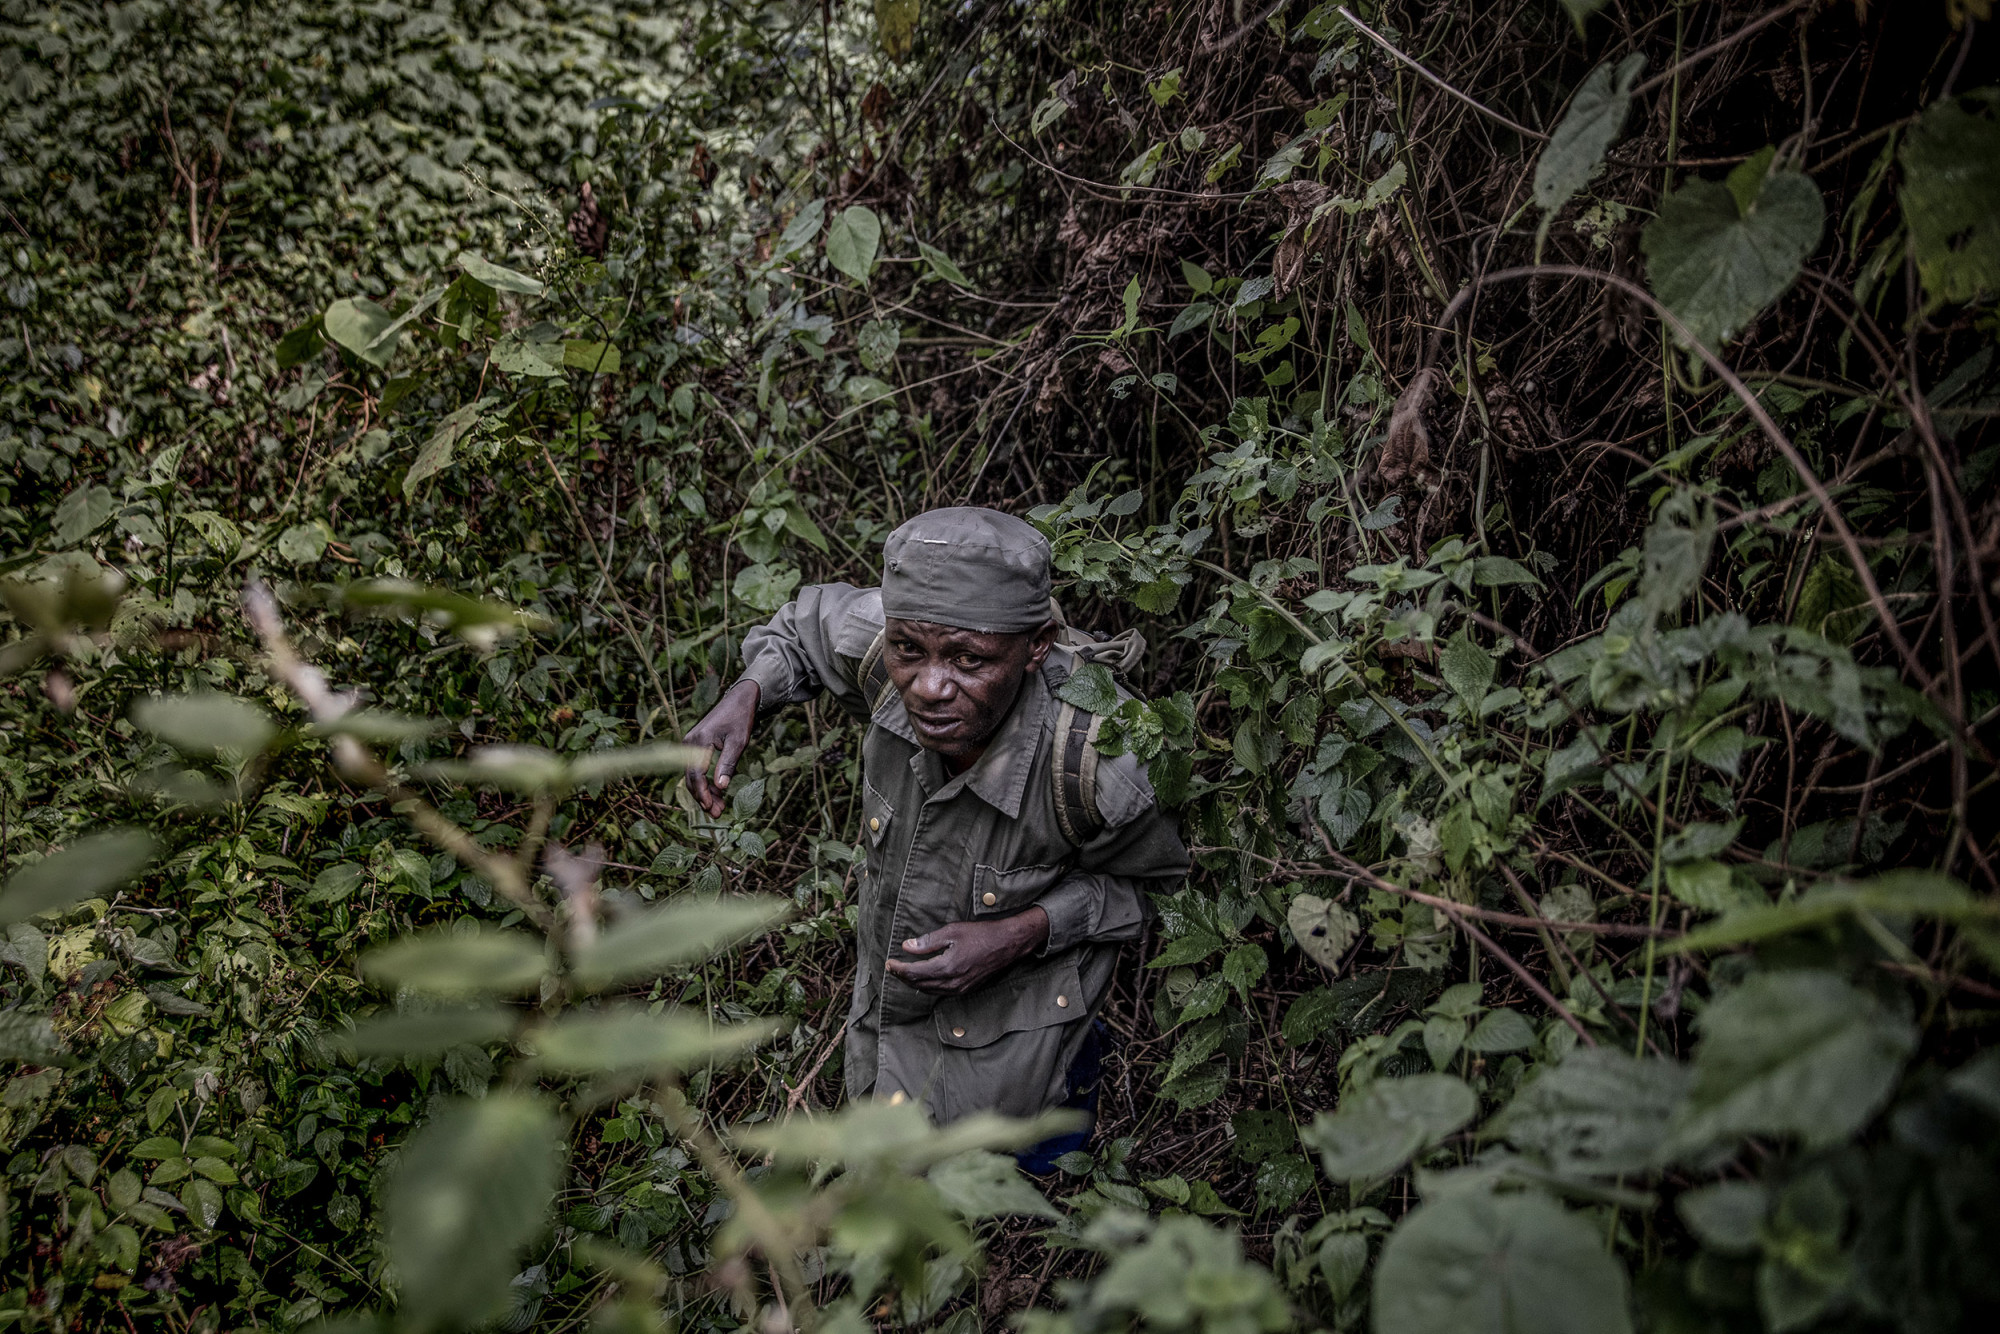 Parc national de Kahuzi-Biega, 5 septembre 2021. Kaboyi Machine, 52 ans, marche dans la forêt sur les traces des gorilles afin de permettre aux touristes de les localiser plus facilement. © Guerchom Ndebo pour la Fondation Carmignac.